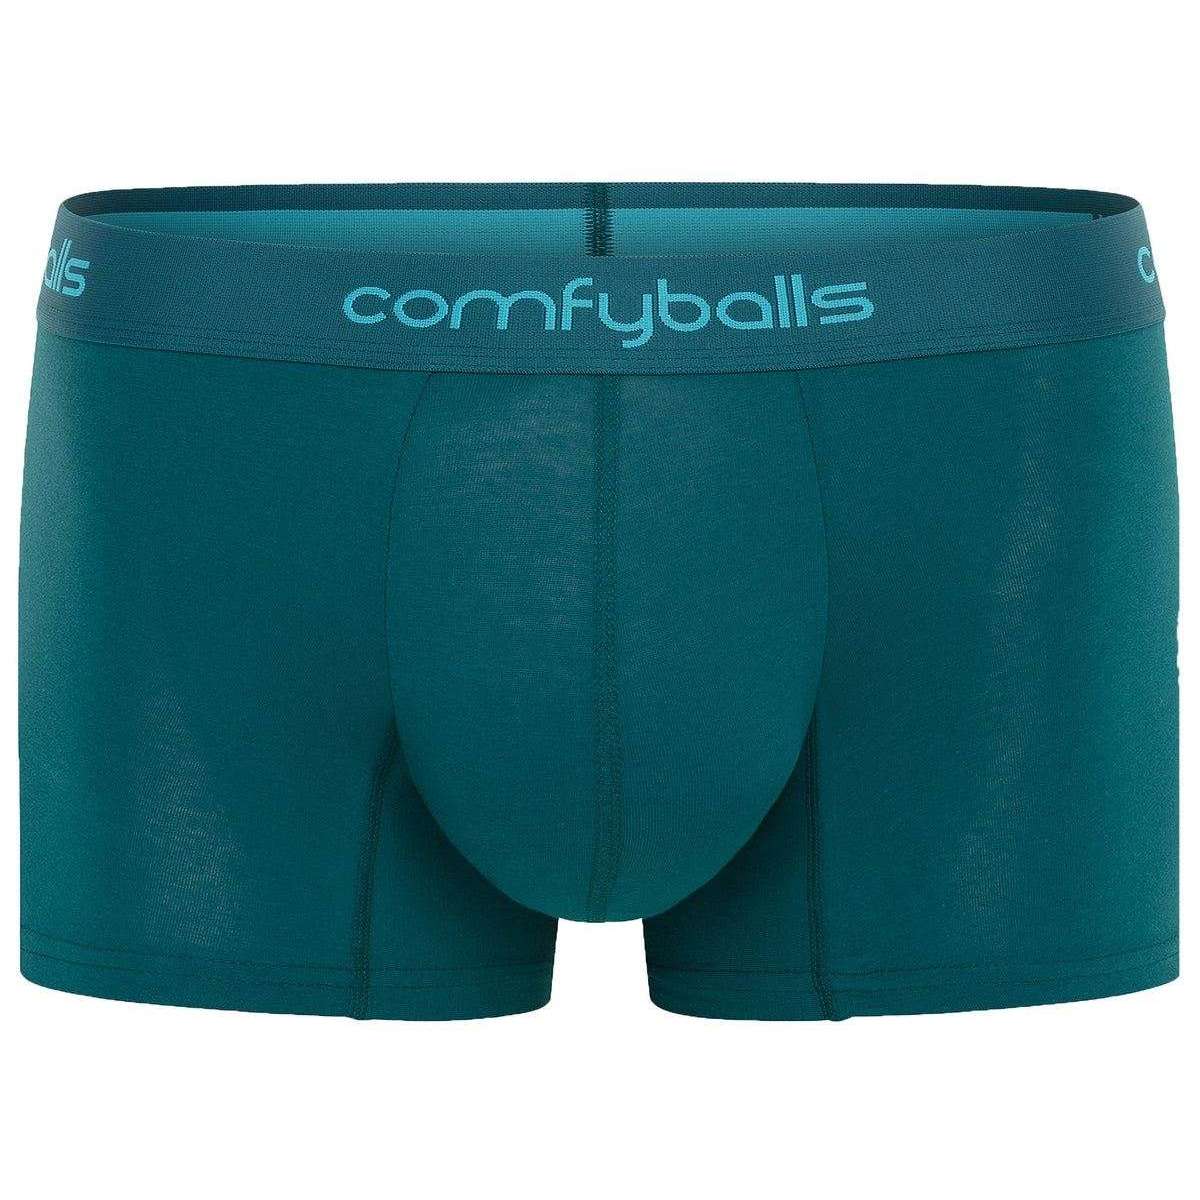 Comfyballs Cotton Long Black No Show Boxer, best mens underwear!